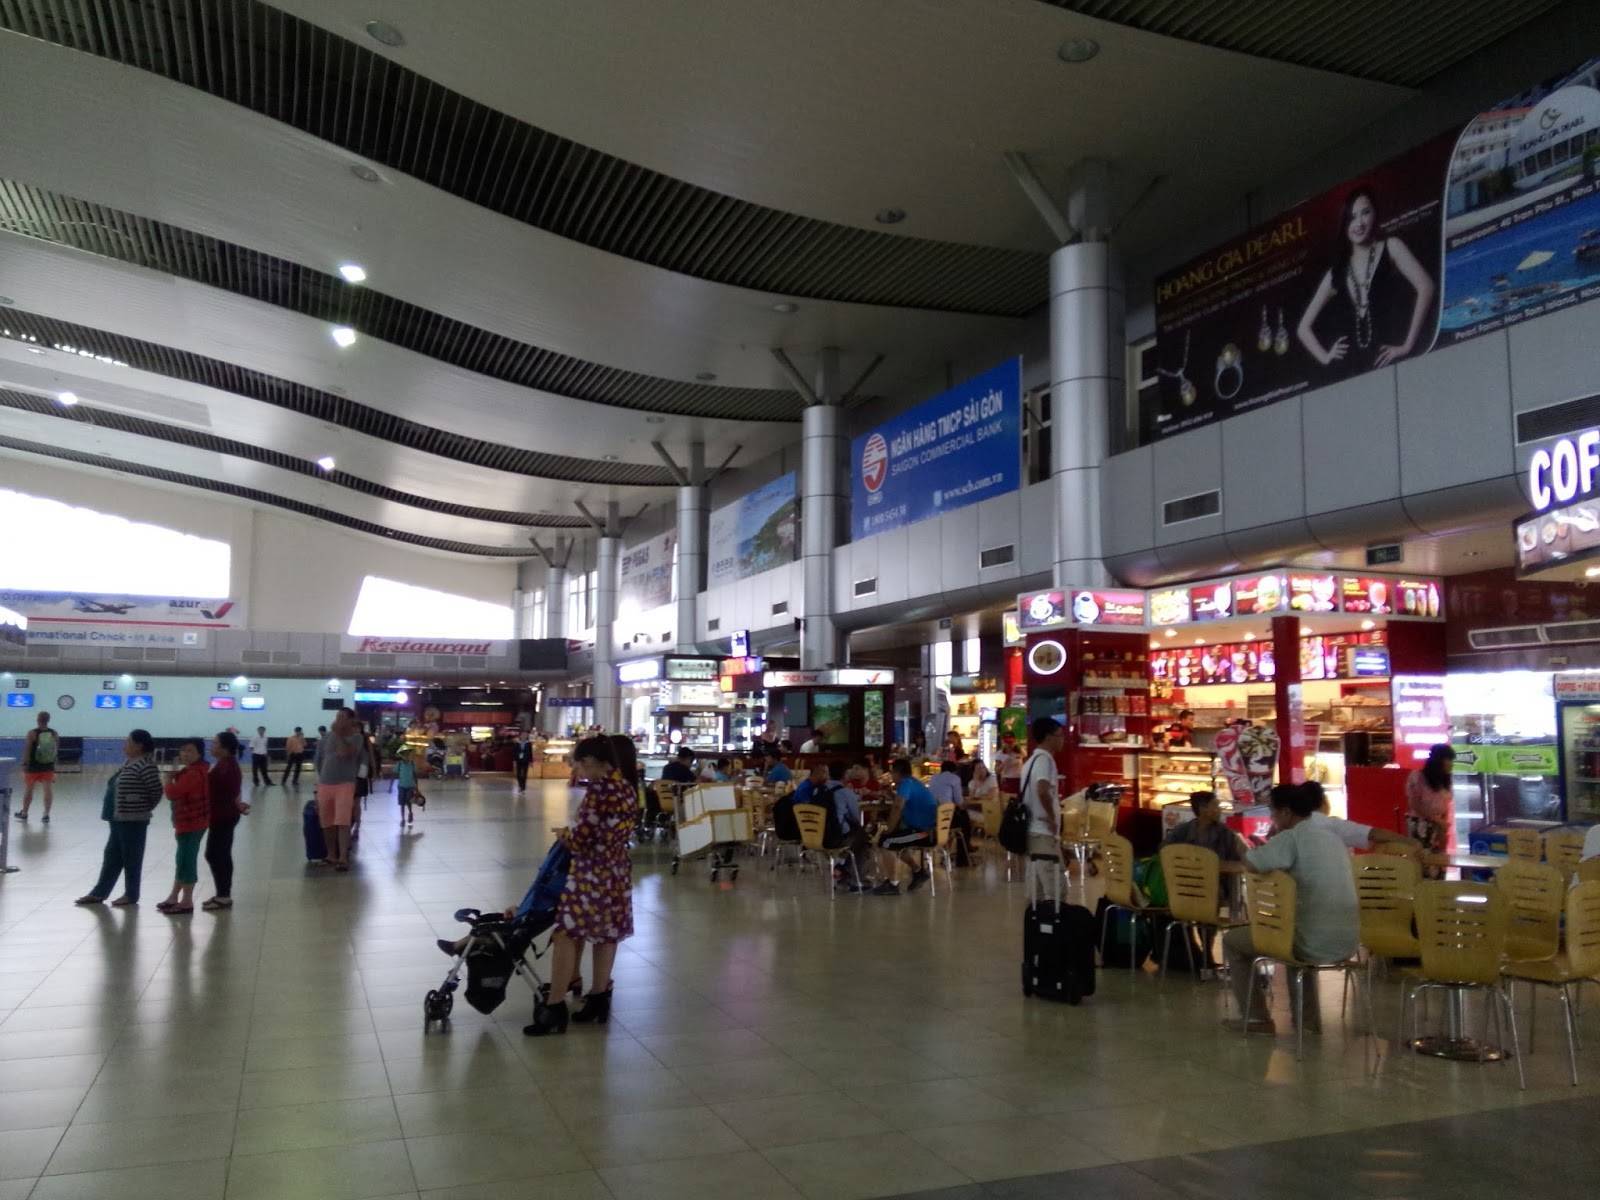 Аэропорт камрань (вьетнам): онлайн табло вылета и прилета, официальный сайт, расписание рейсов